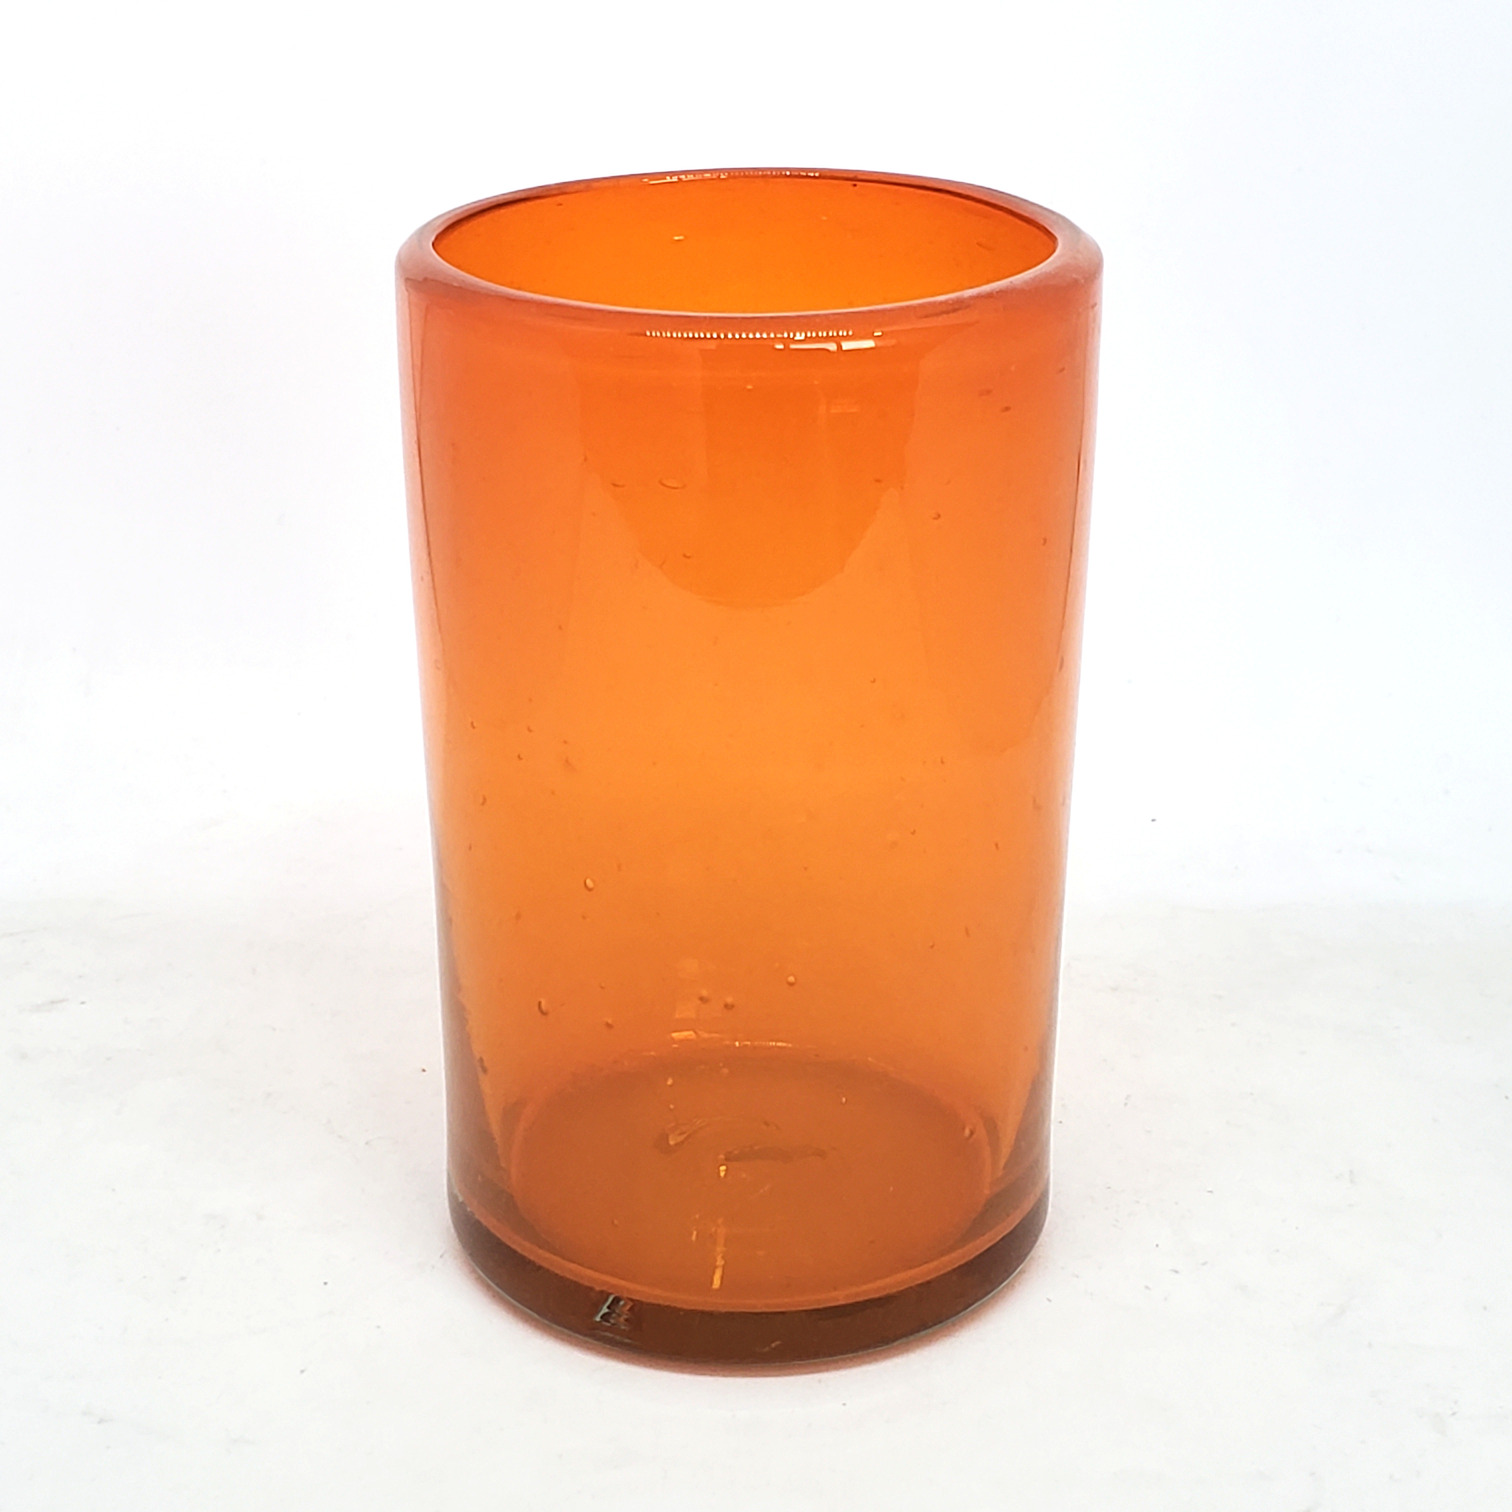 Ofertas / vasos grandes color naranja / �stos artesanales vasos le dar�n un toque cl�sico a su bebida favorita.